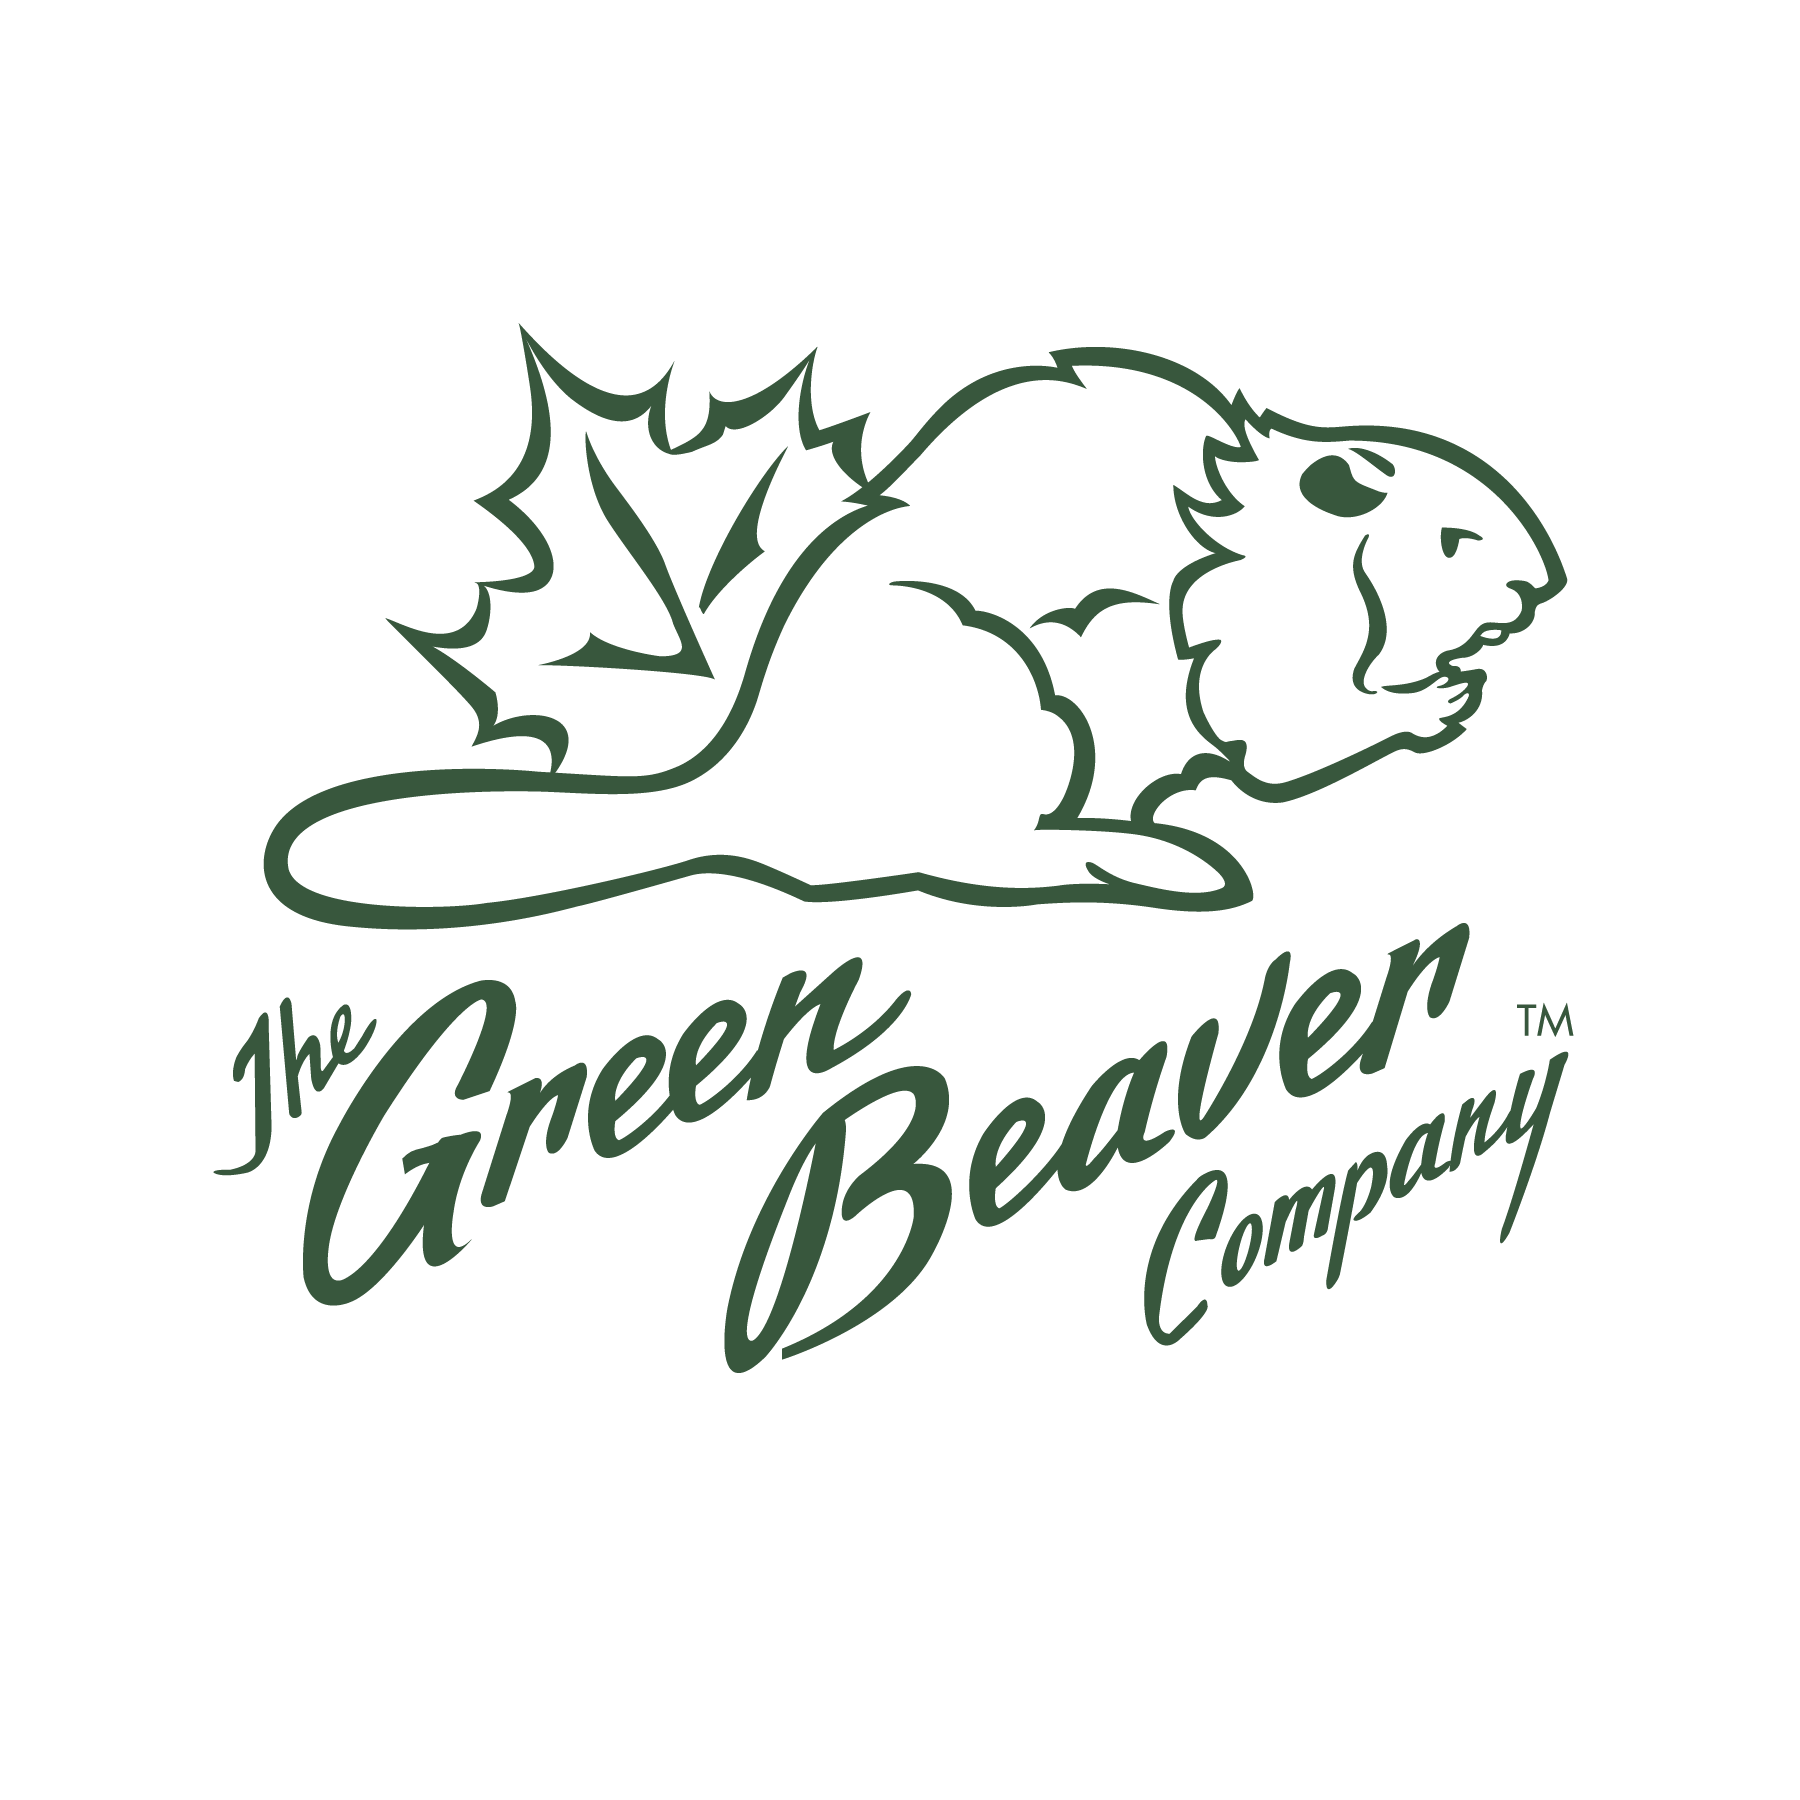 Green Beaver - Circulaire